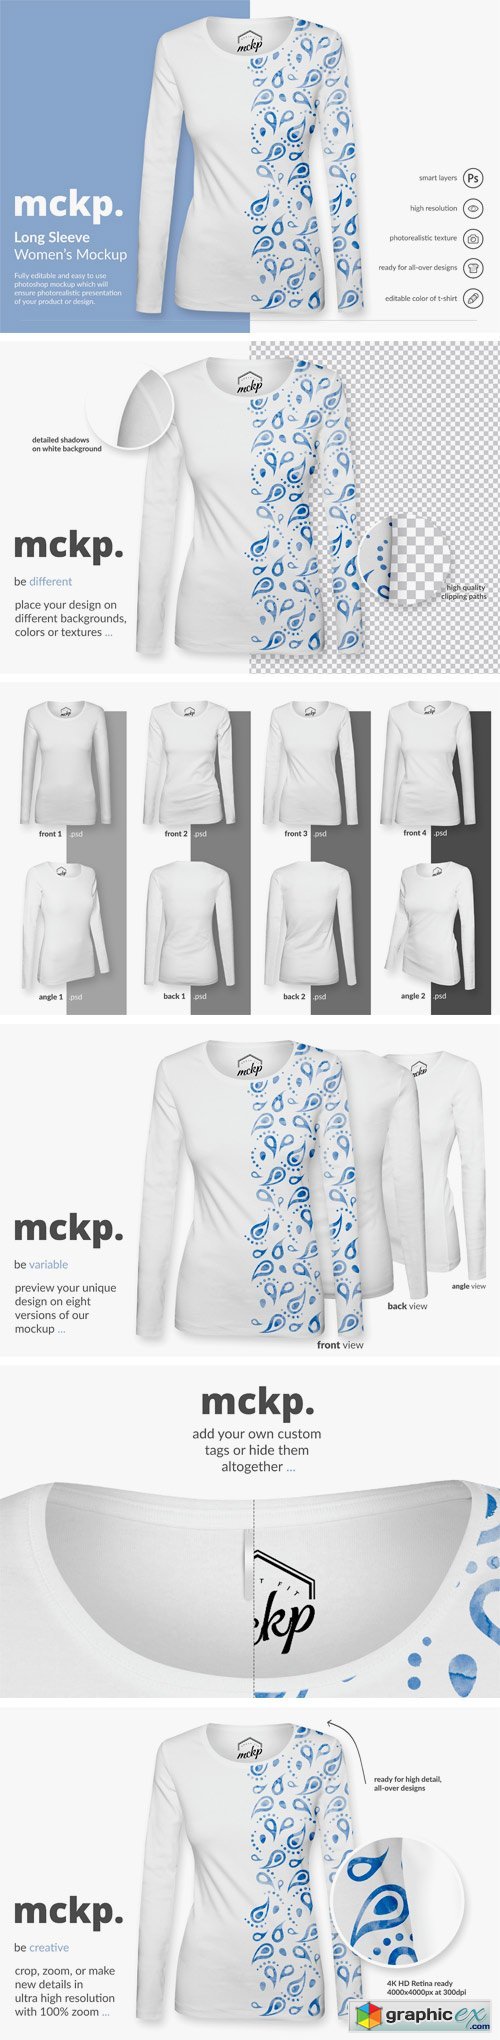 Long Sleeve by mckp - Women's Mockup